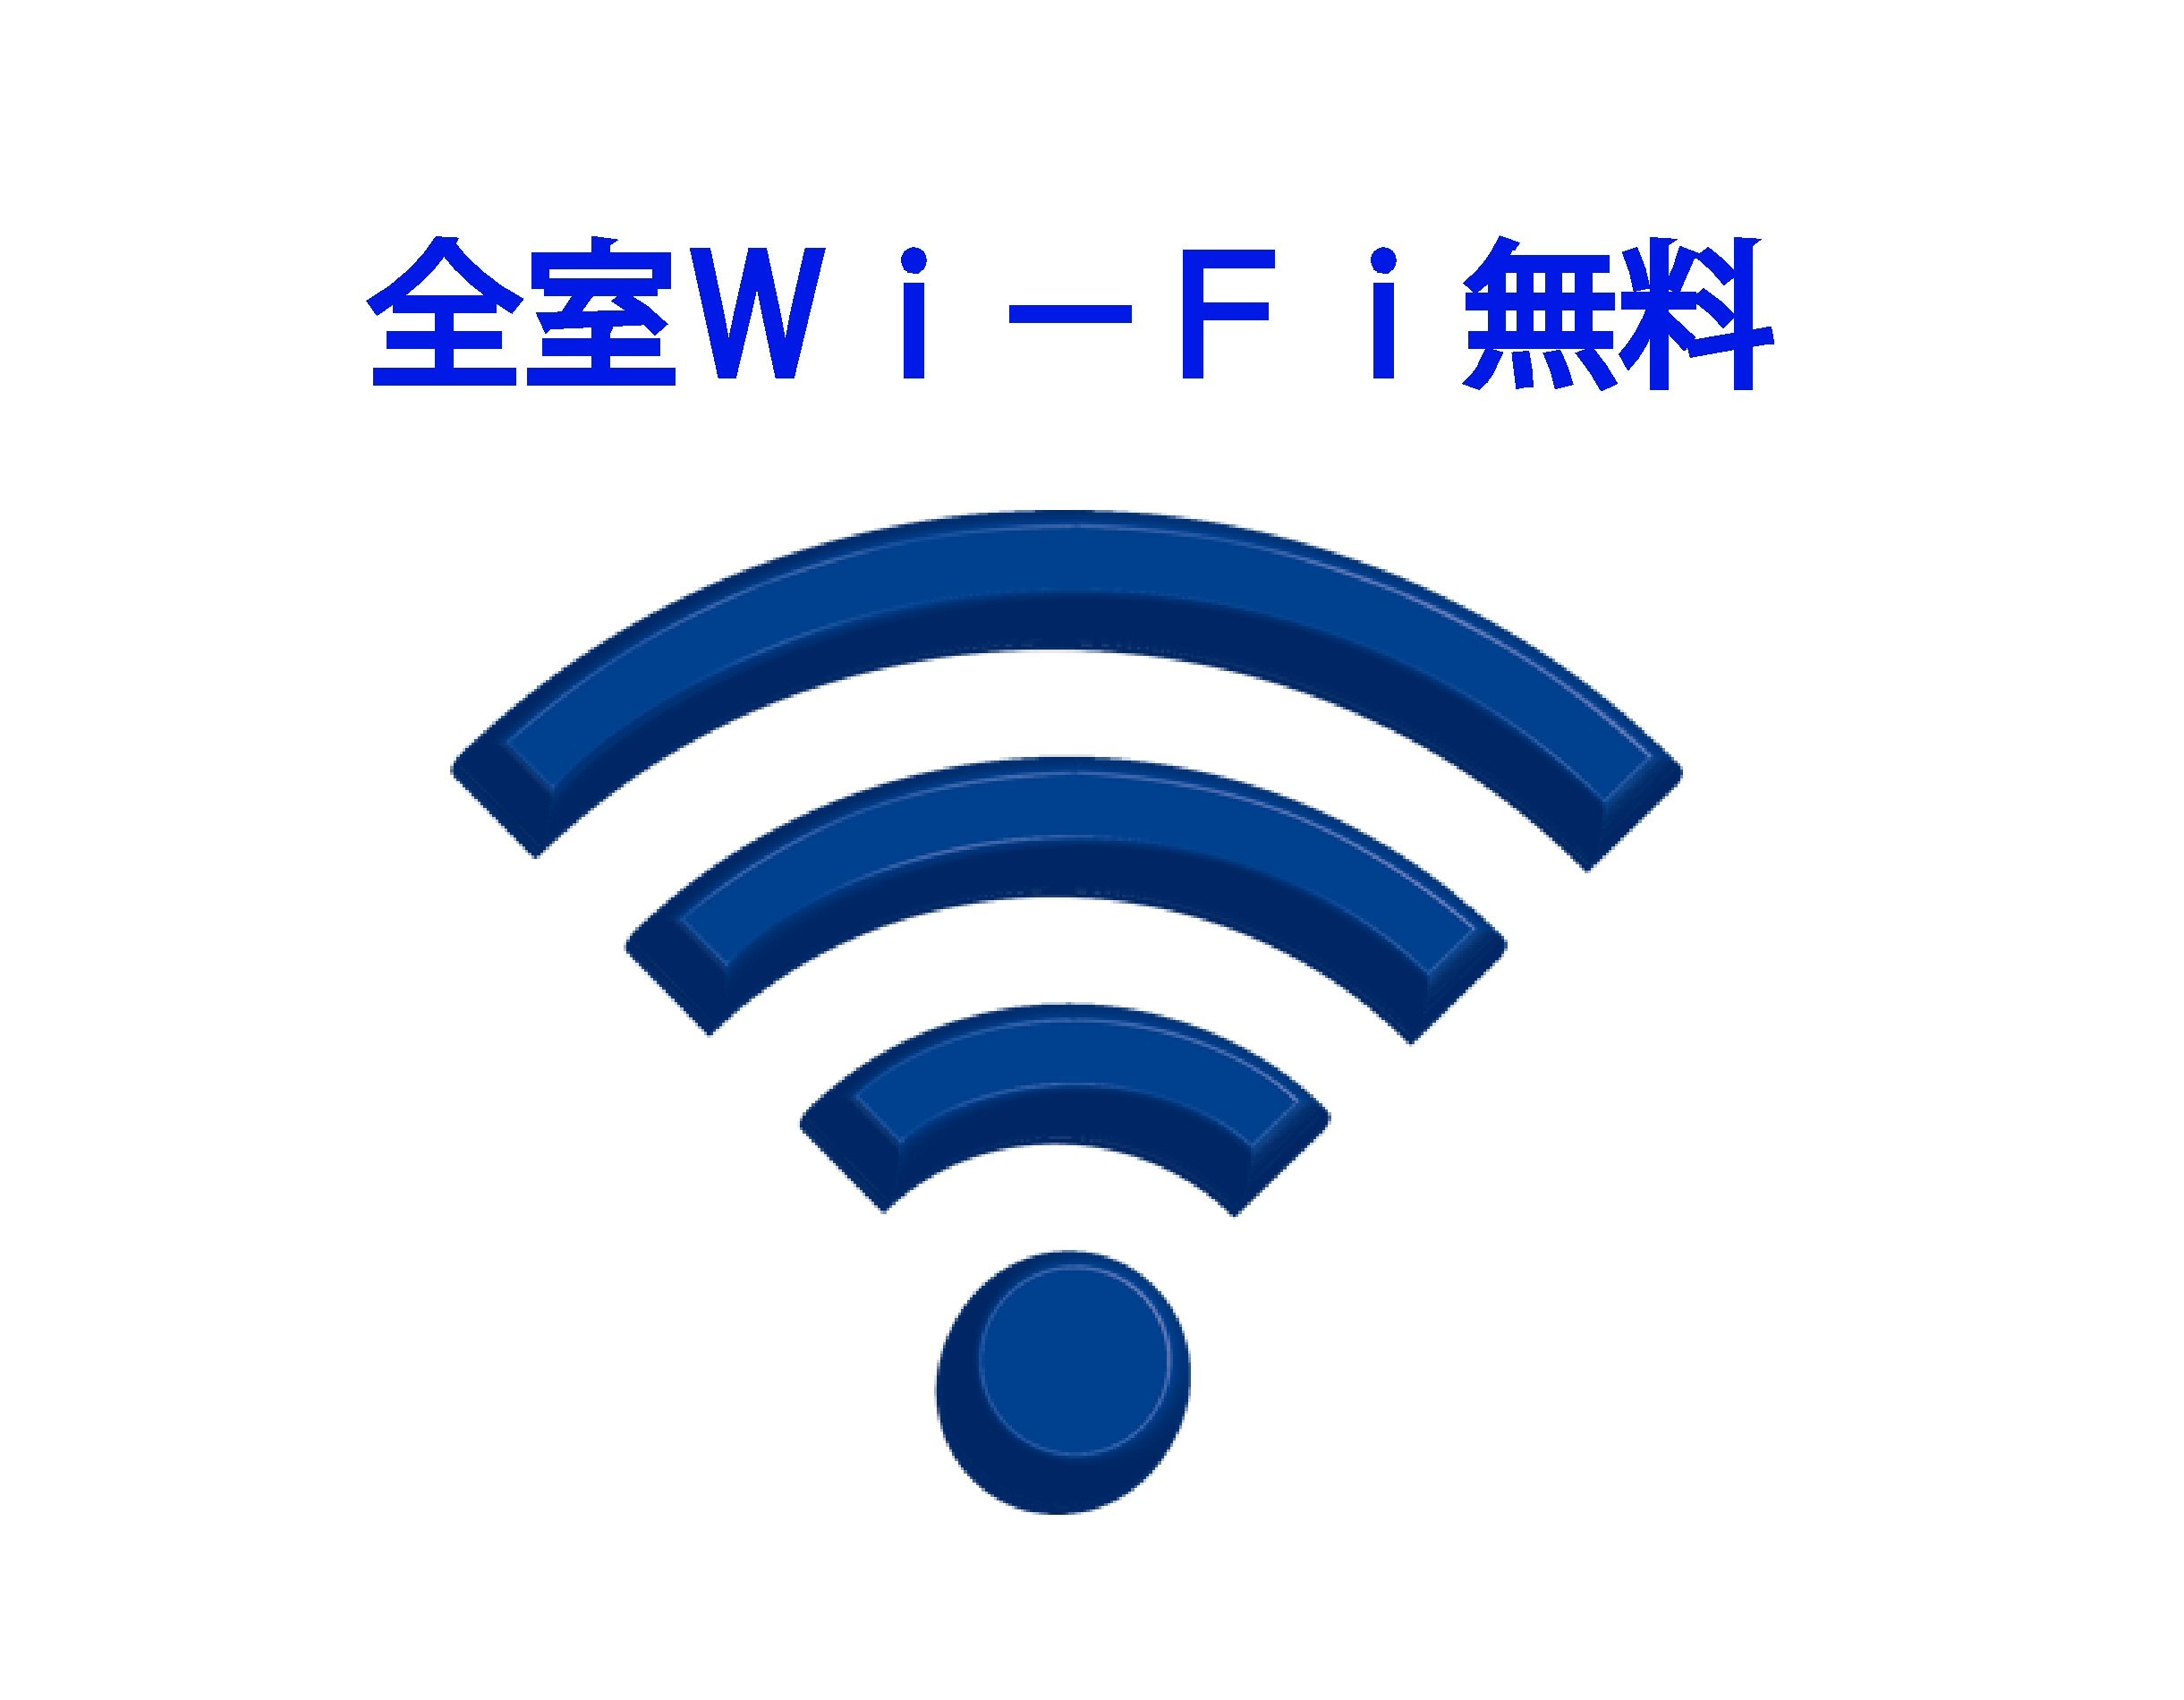 wi-fi free